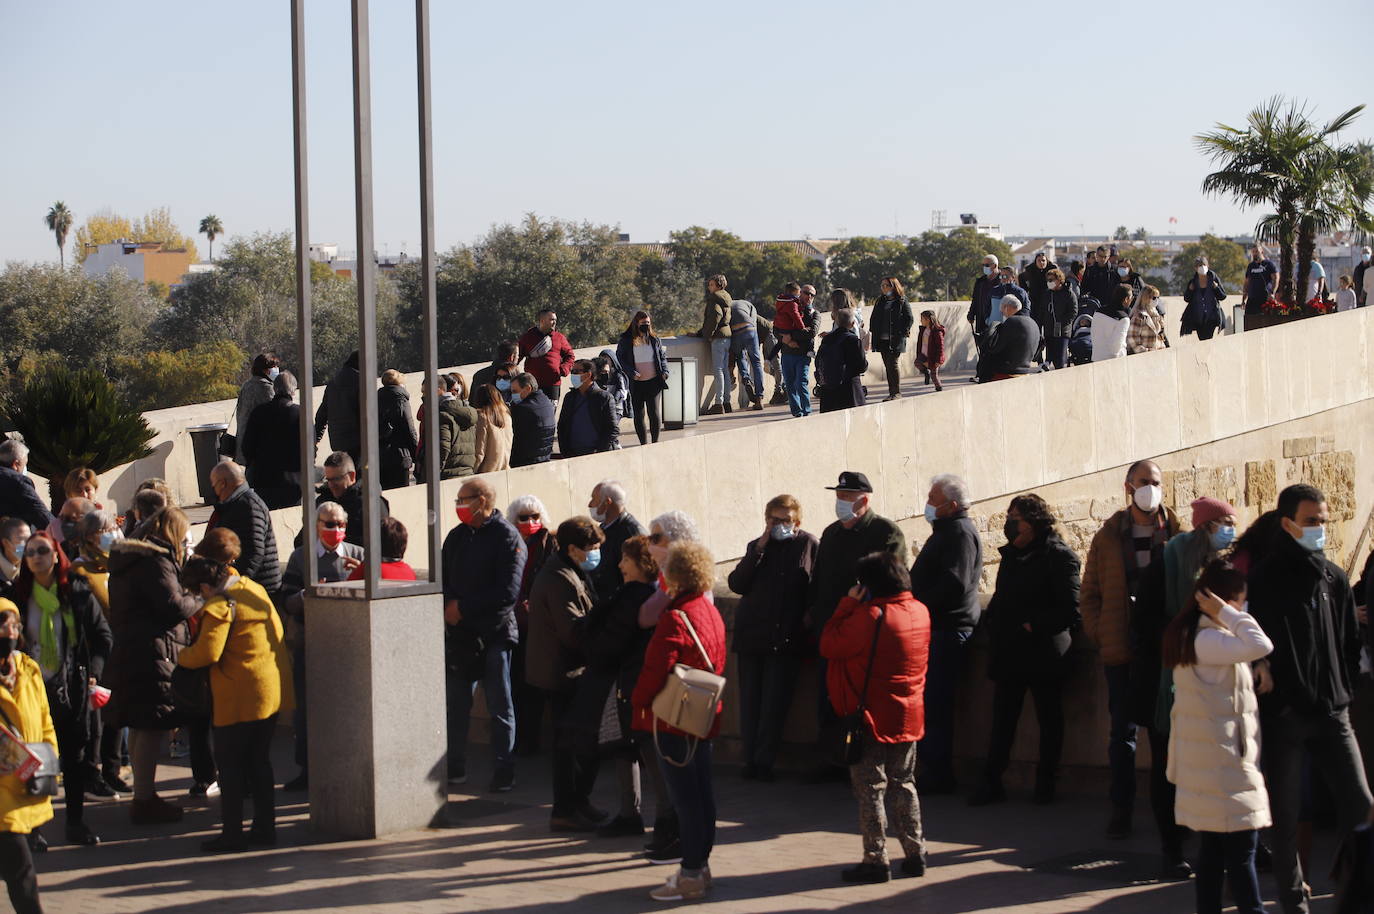 Los turistas durante el puente de la Inmaculada en Córdoba, en imágenes